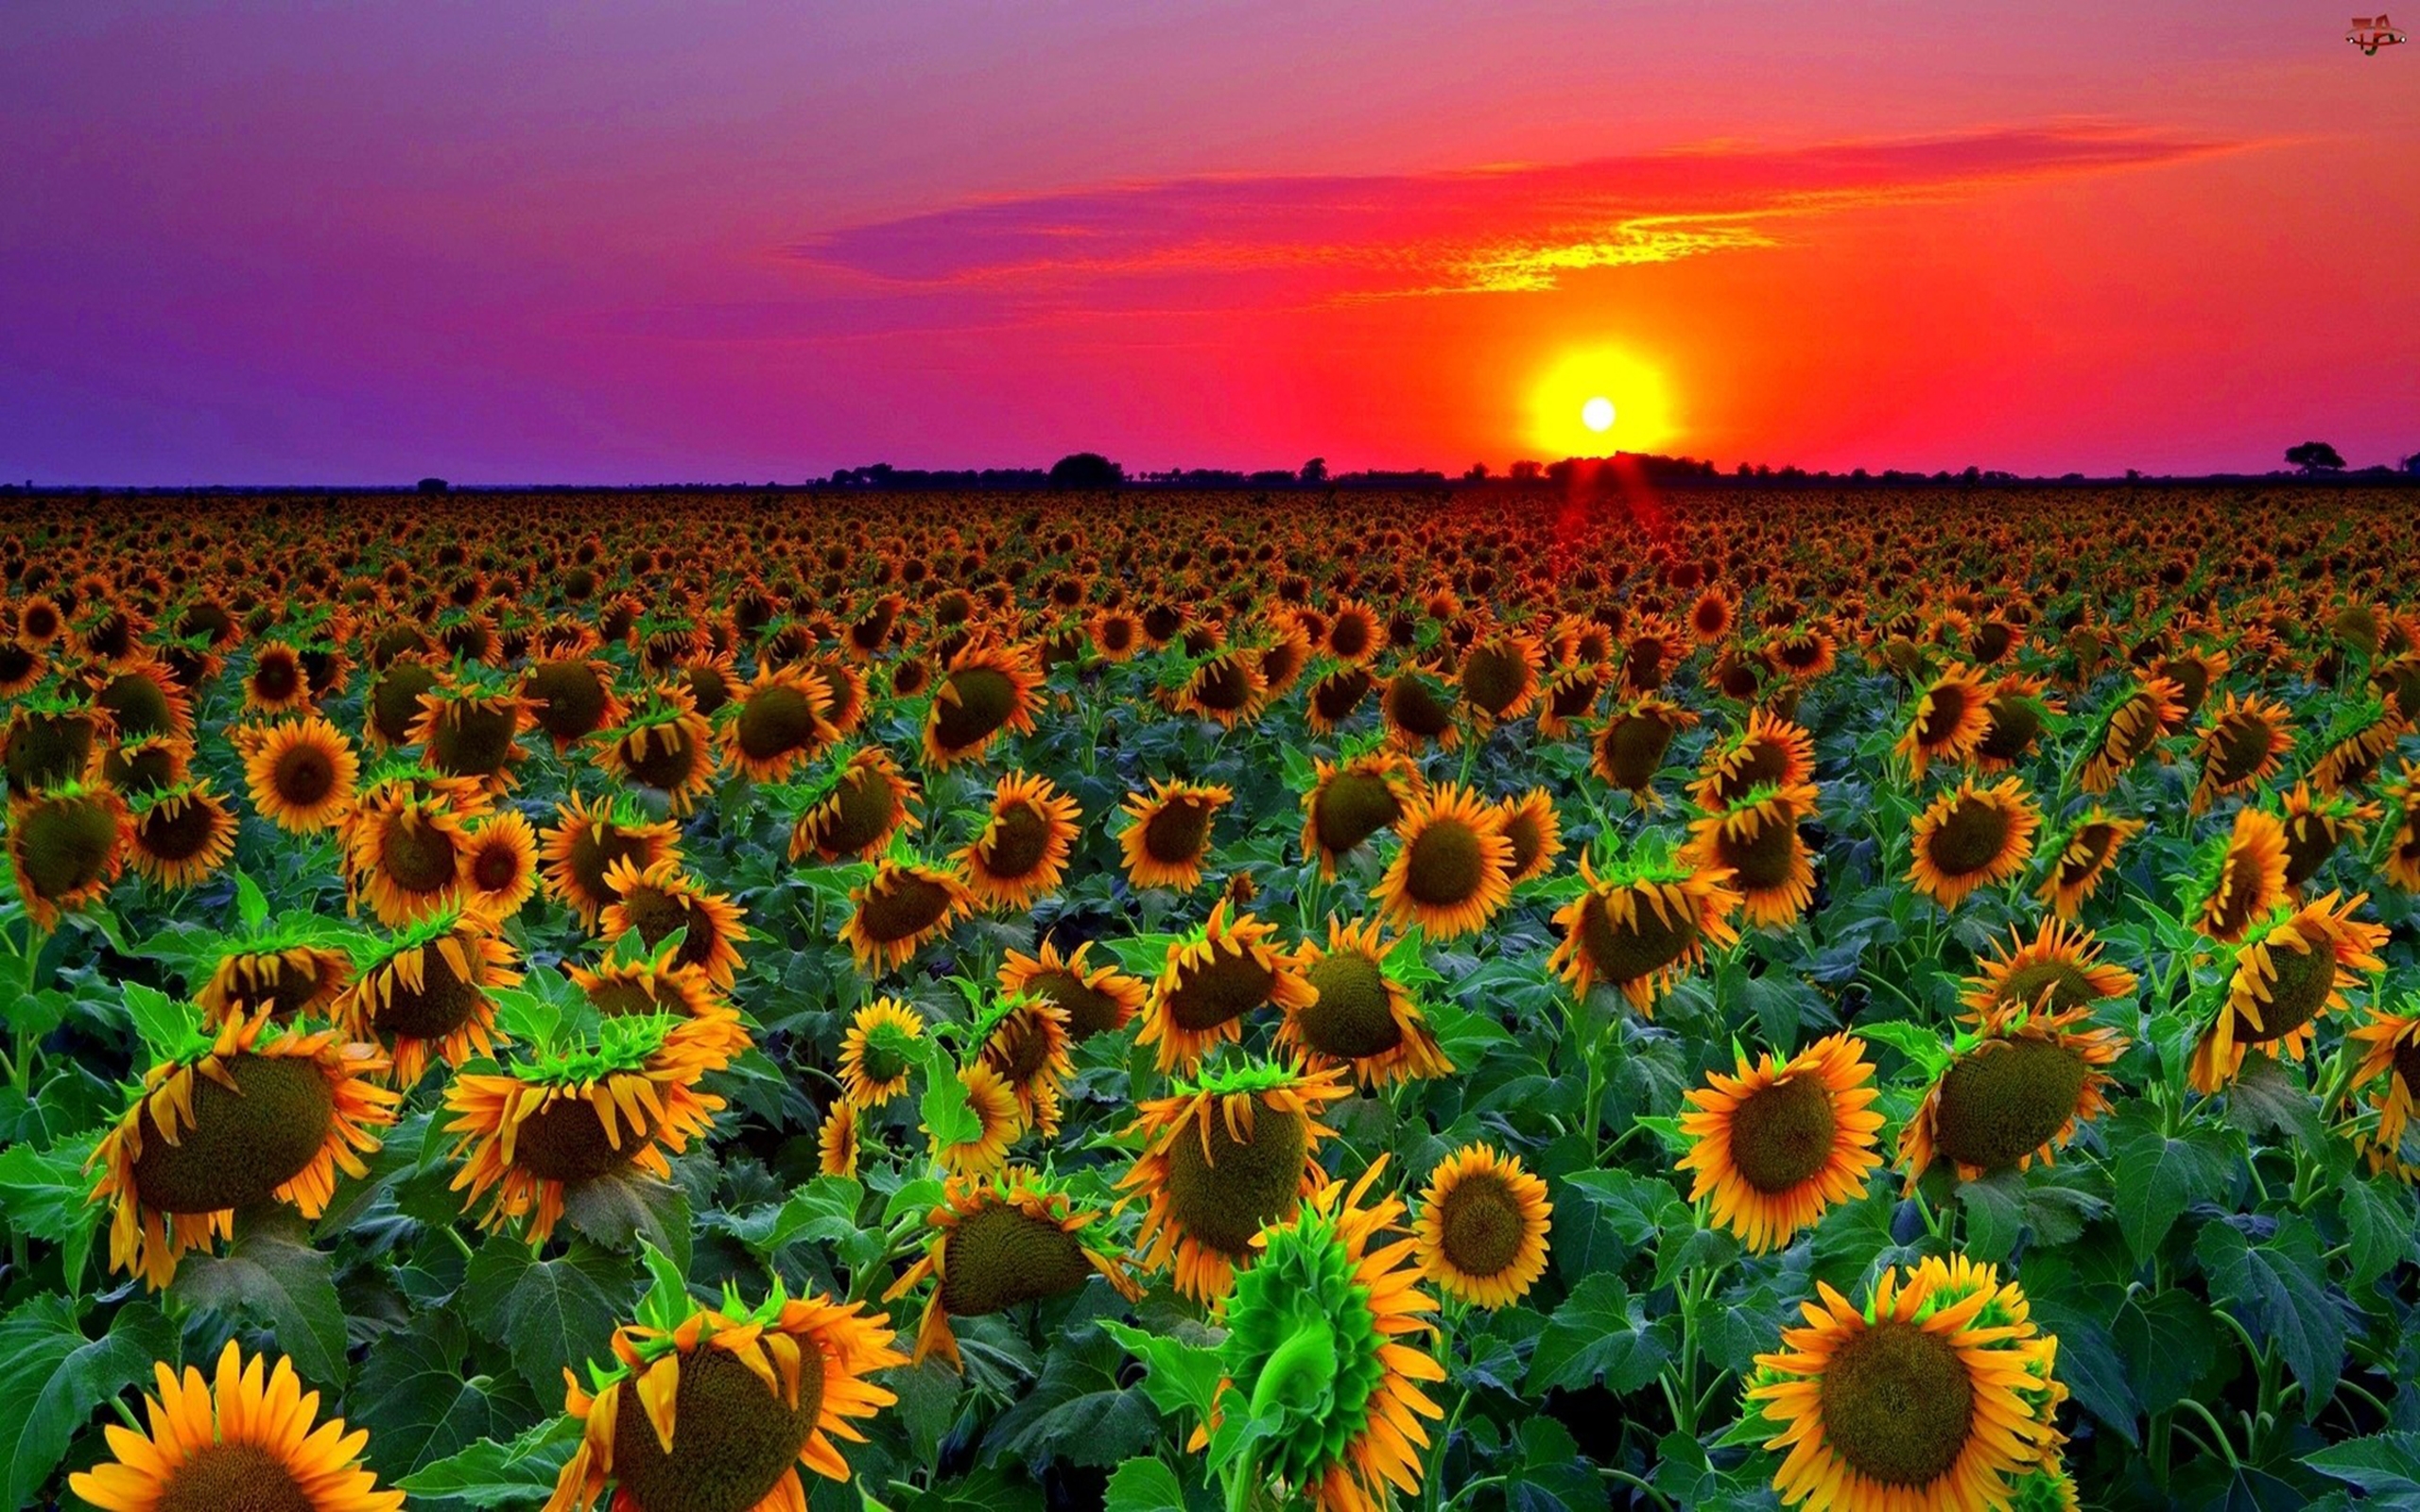 Sunflower Field Sunset Wallpaper Hd 8589131 Wallpapers13 Com